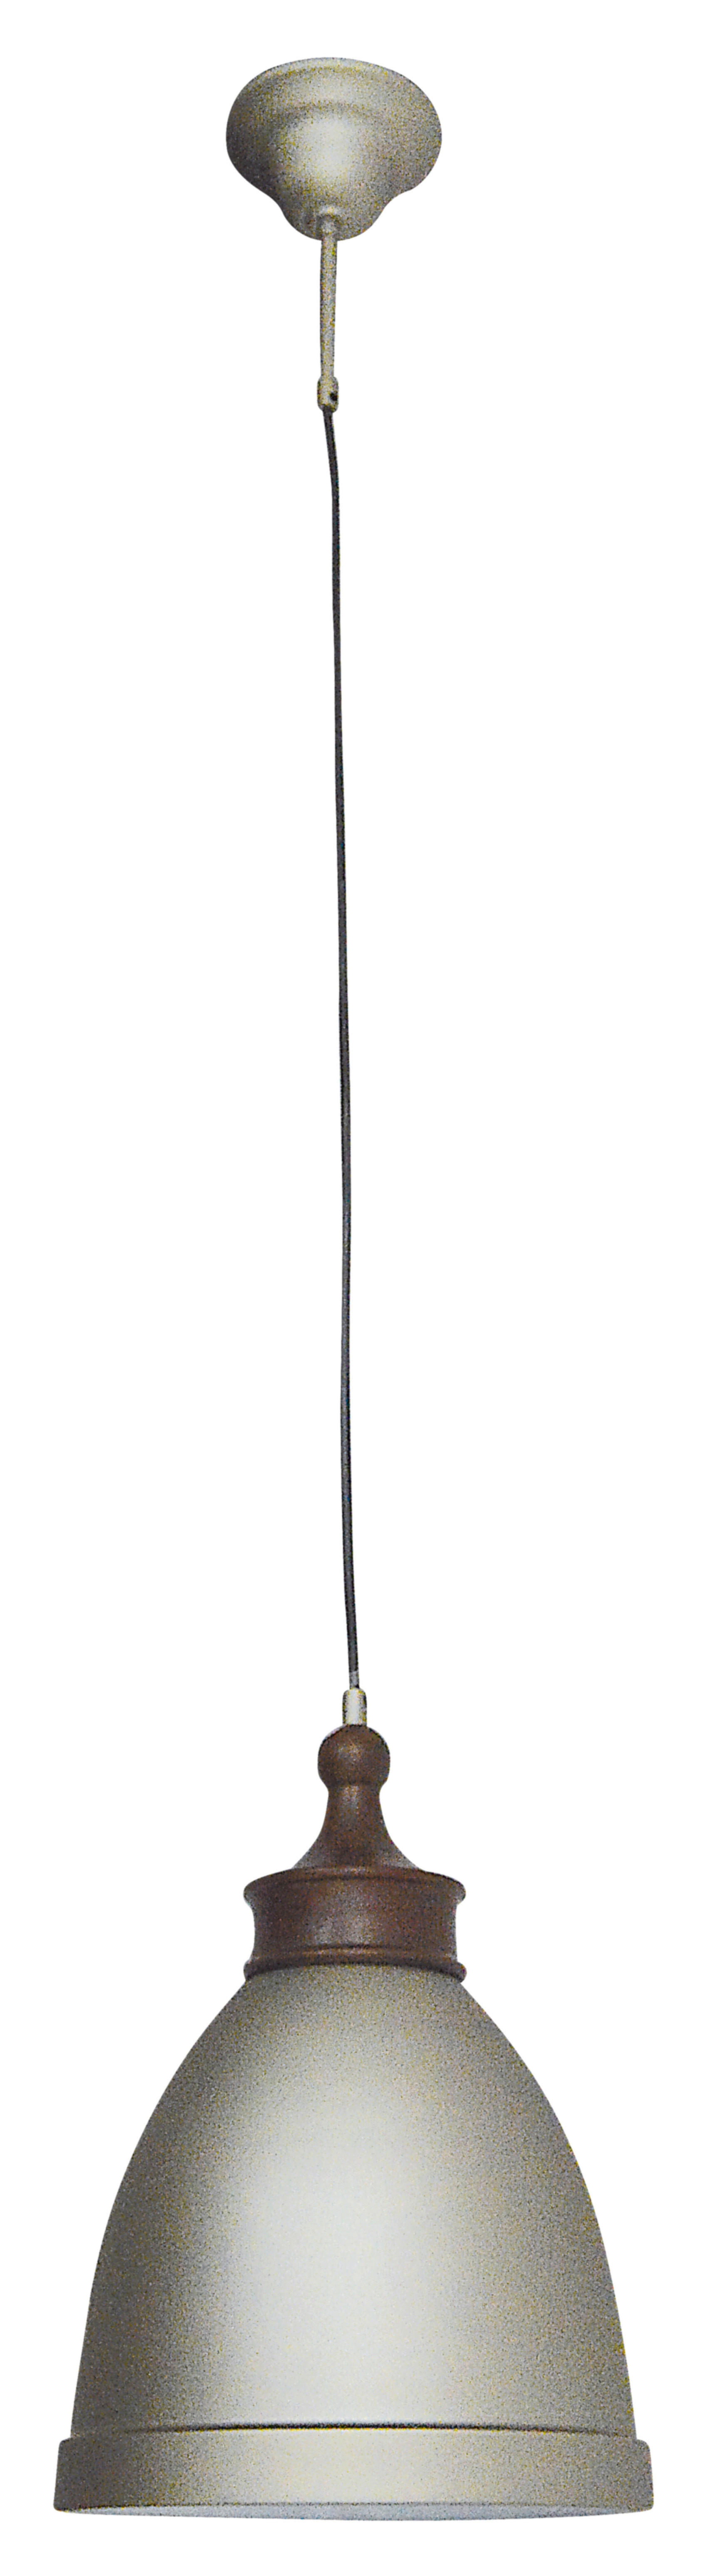 HÄNGELEUCHTE 25/36,5 cm   - Silberfarben, LIFESTYLE, Metall (25/36,5cm) - Näve